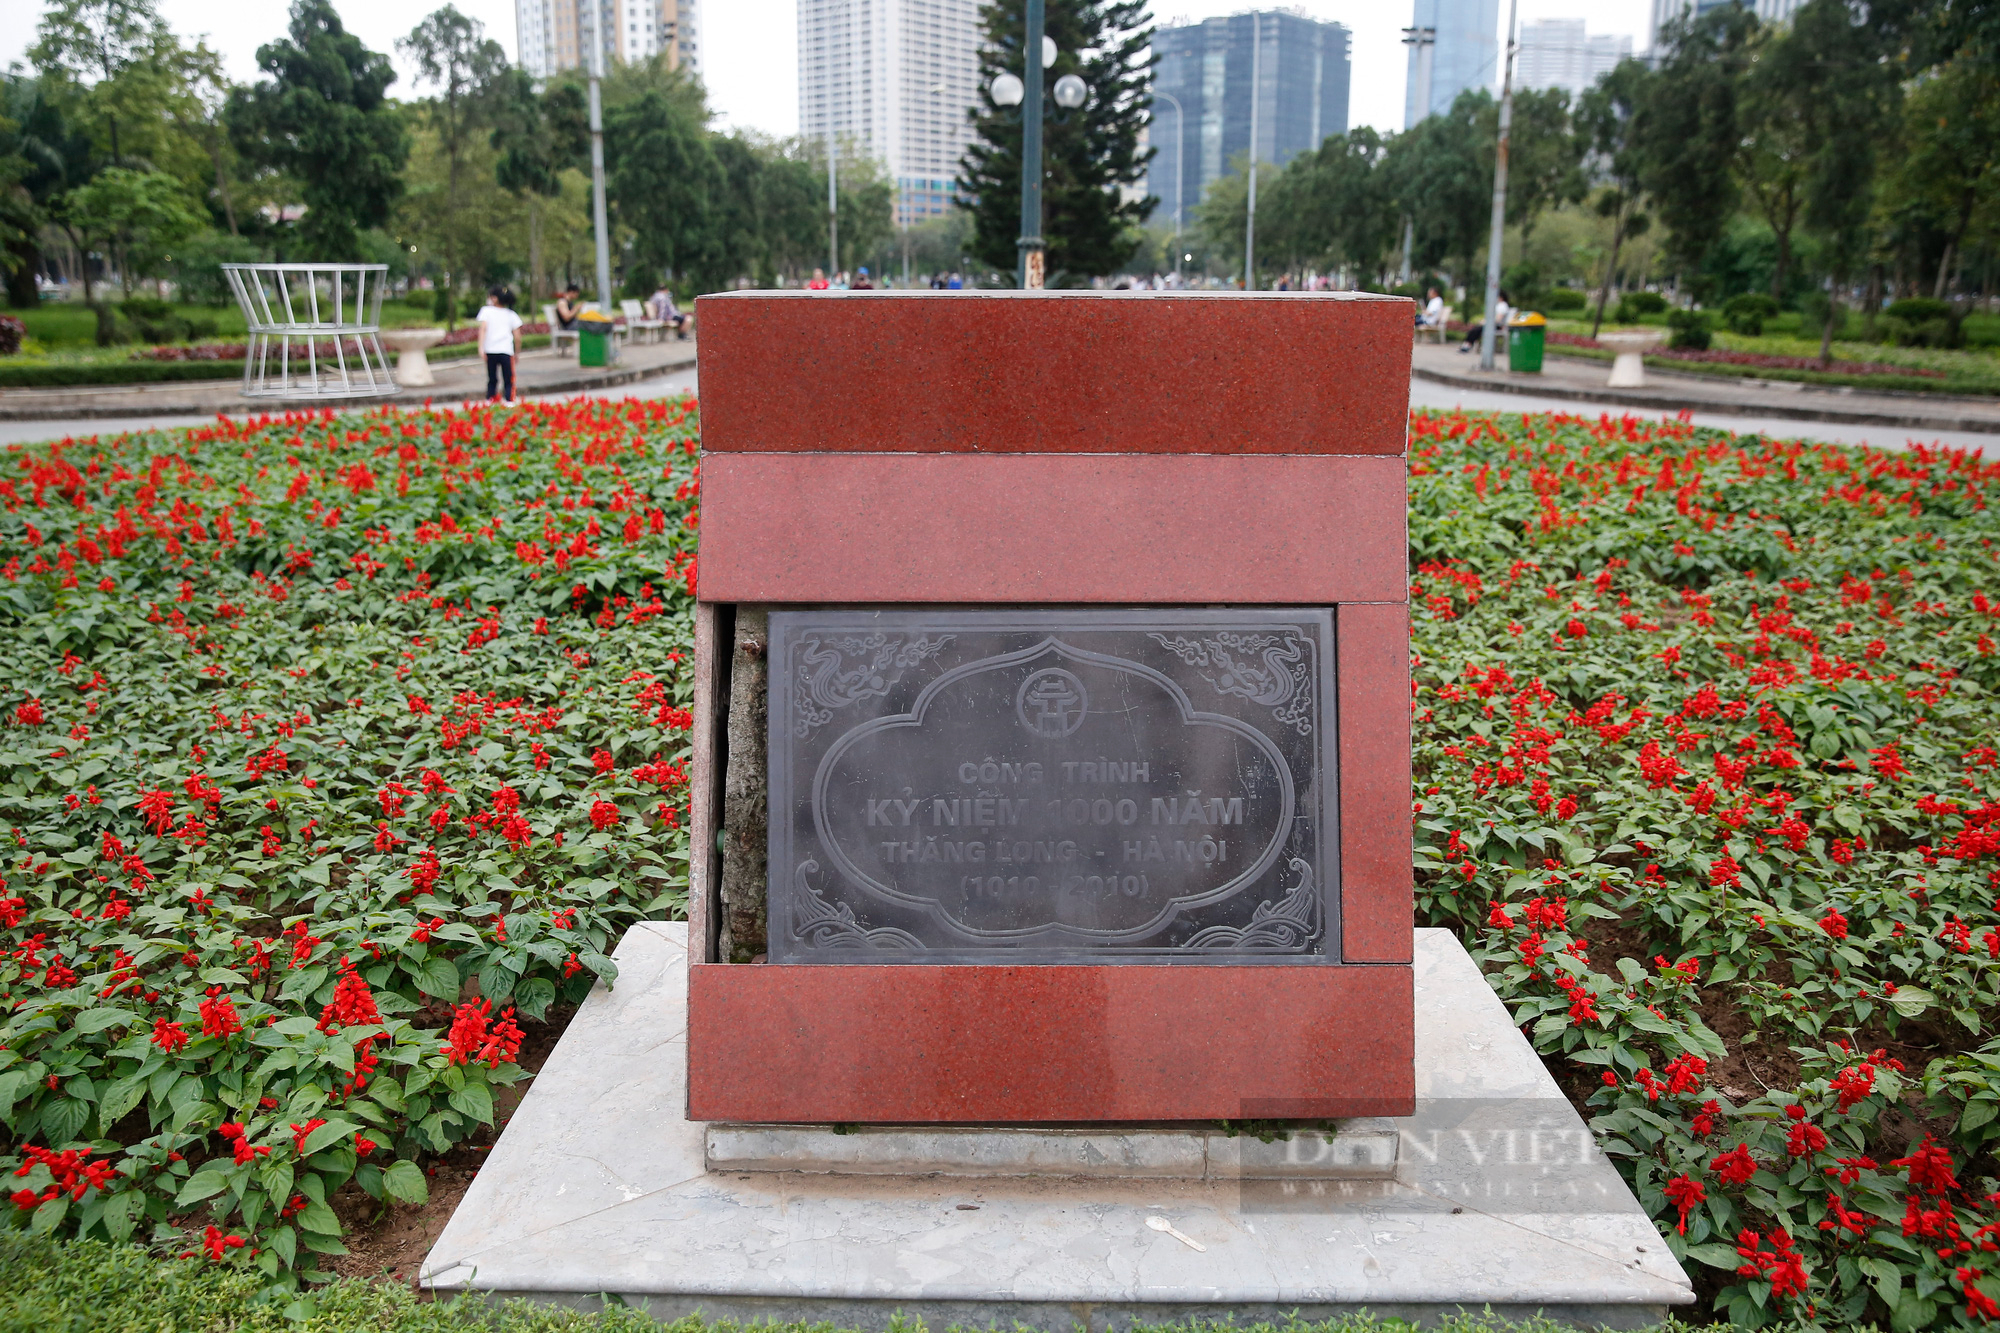 Công viên hiện đại bậc nhất Hà Nội xuống cấp nghiêm trọng - Ảnh 11.